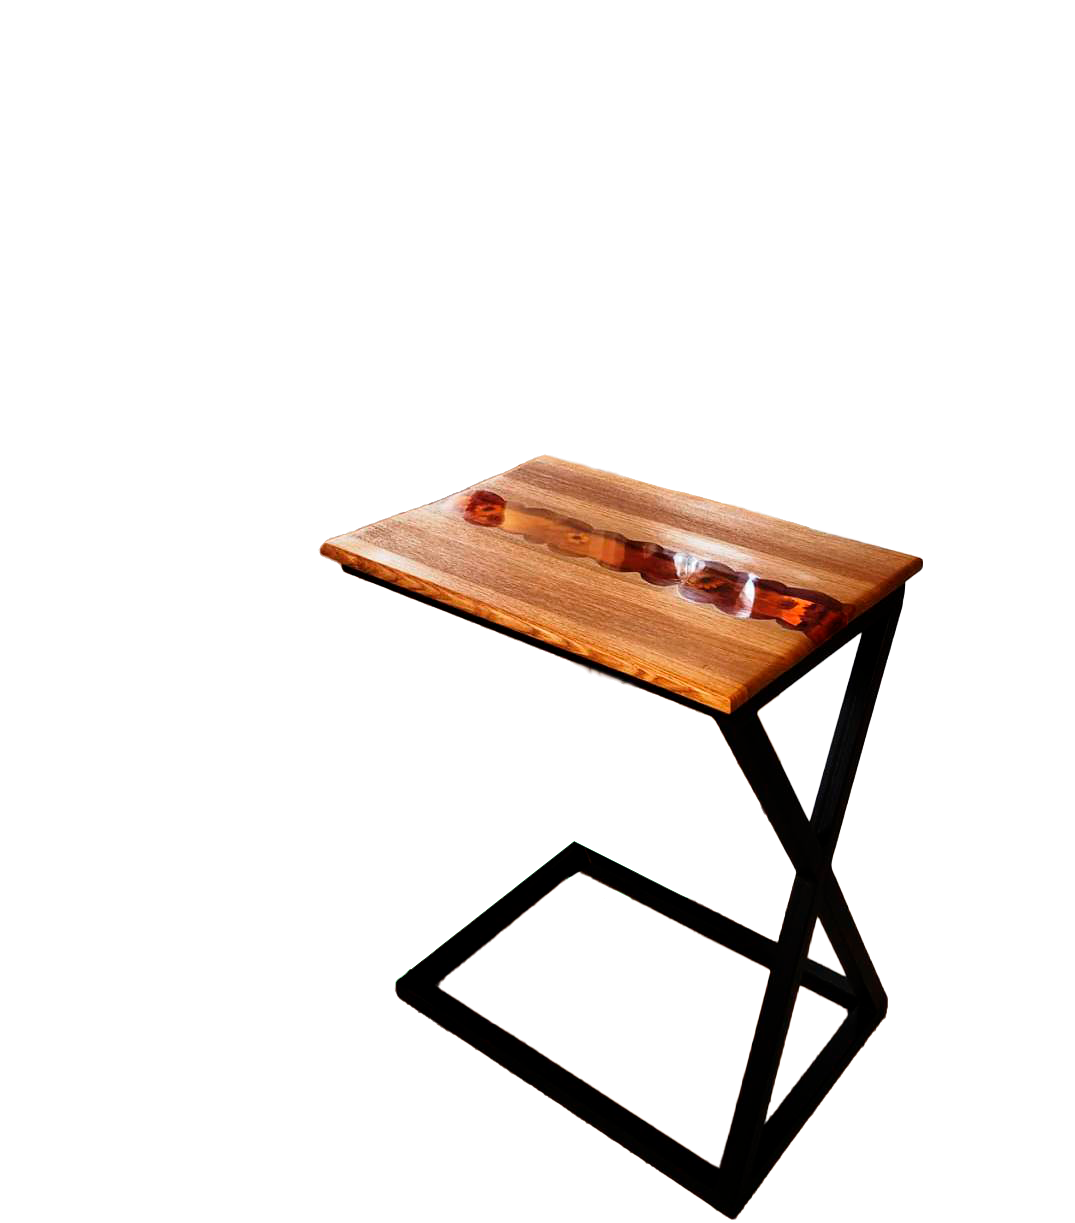 Приставной столик Янтарь из массива дуба цвета натуральный дуб с янтарной ювелирной смолой